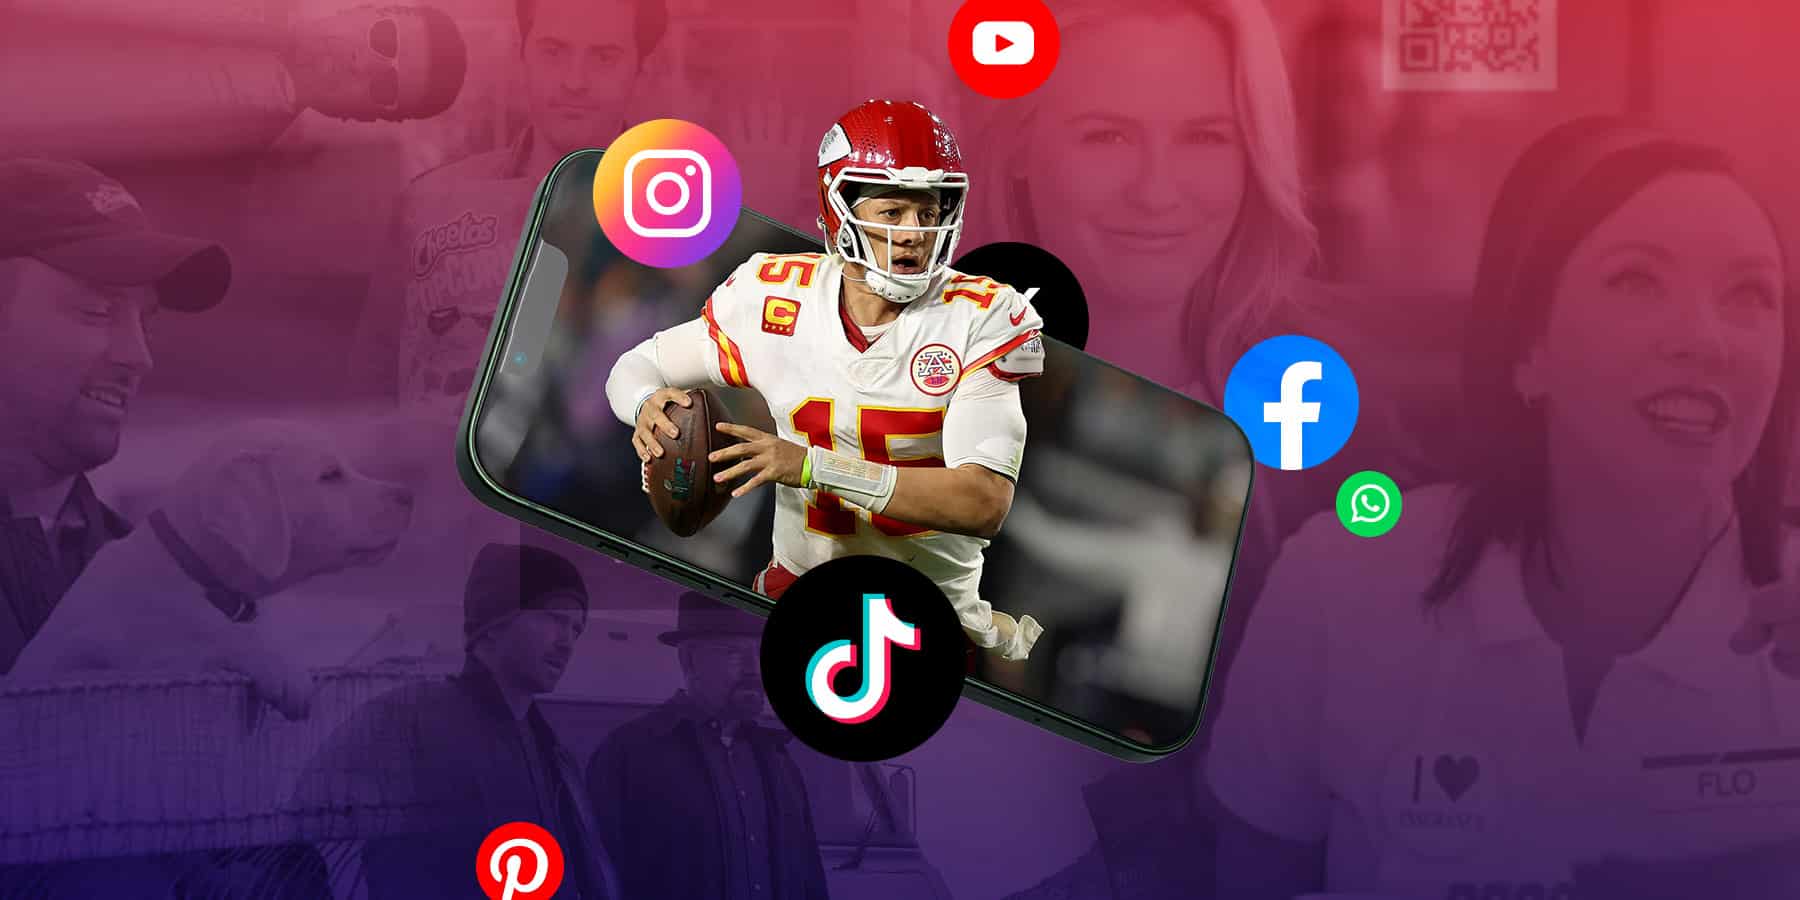 super social plays: maximizing super bowl LVIII with social media